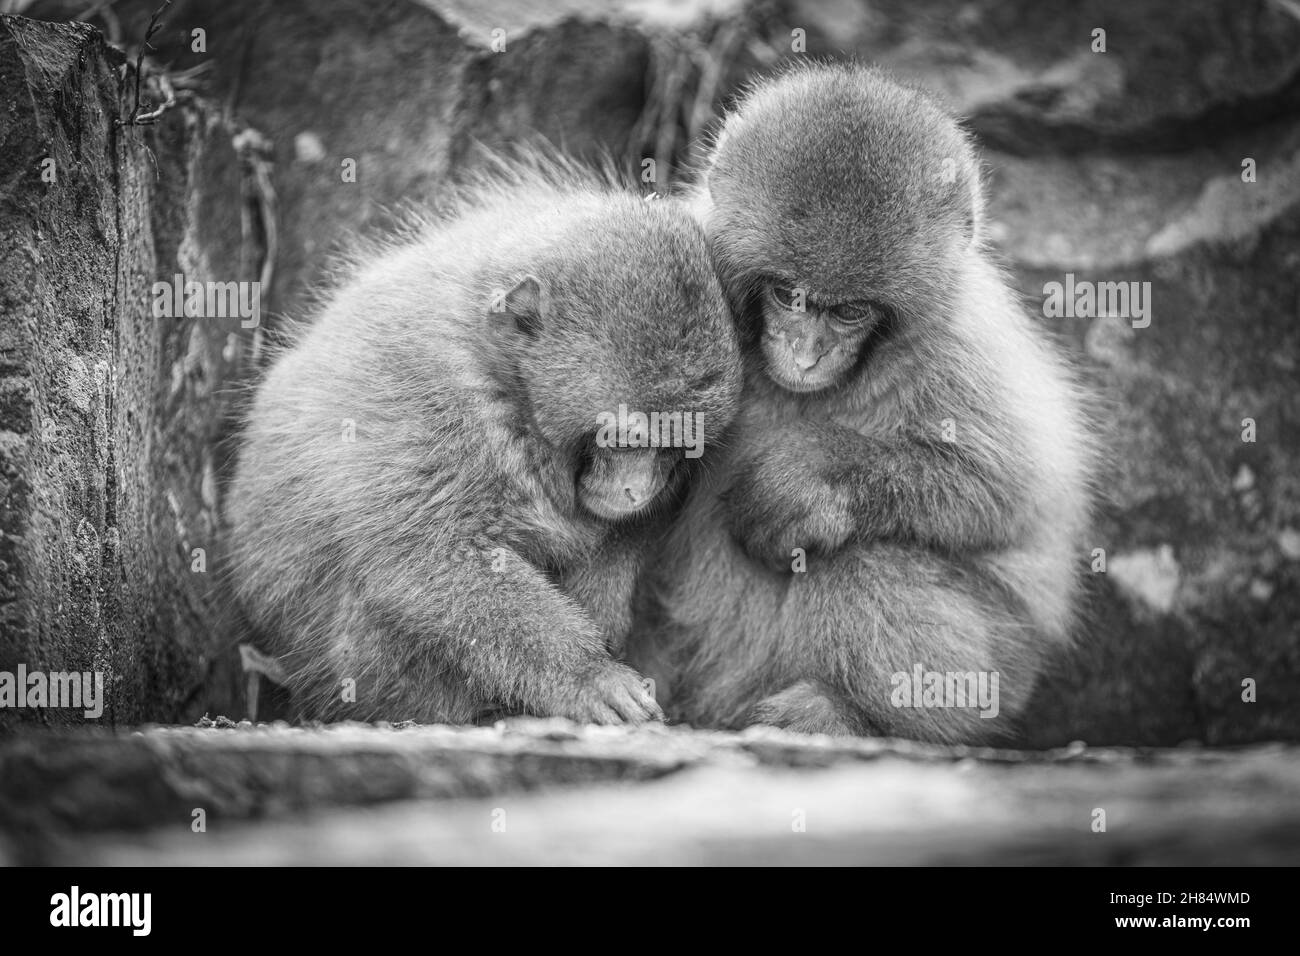 Primo piano in scala di grigi di due scimmie coccole Foto Stock